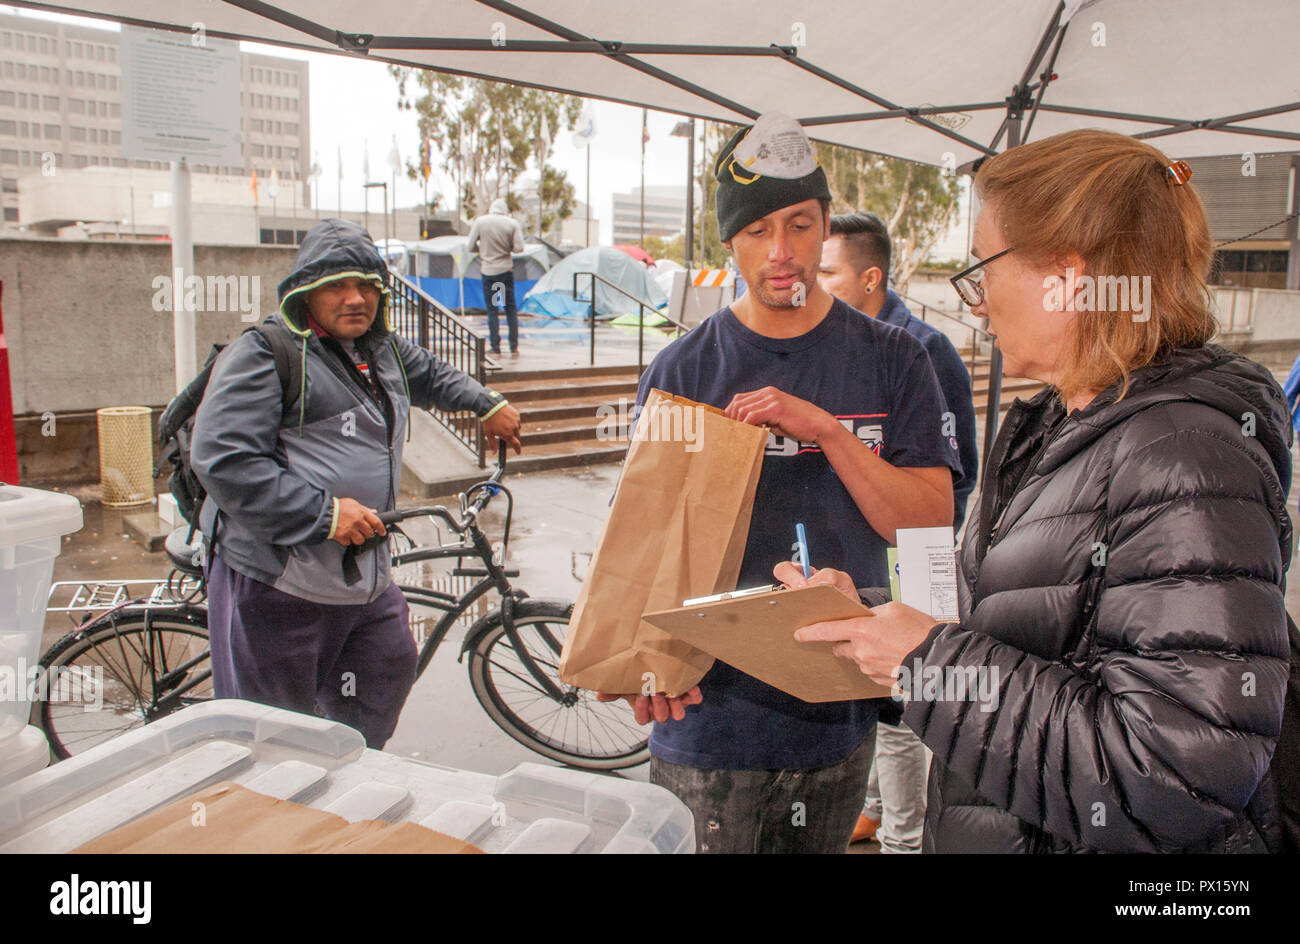 Pour lutter contre l'overdose aux opiacés, multiracial volontaires distribuent des kits d'antidote de Naloxone dans des sacs en papier à un campement de sans-abri à Santa Ana, CA. Remarque tentes en arrière-plan. Banque D'Images